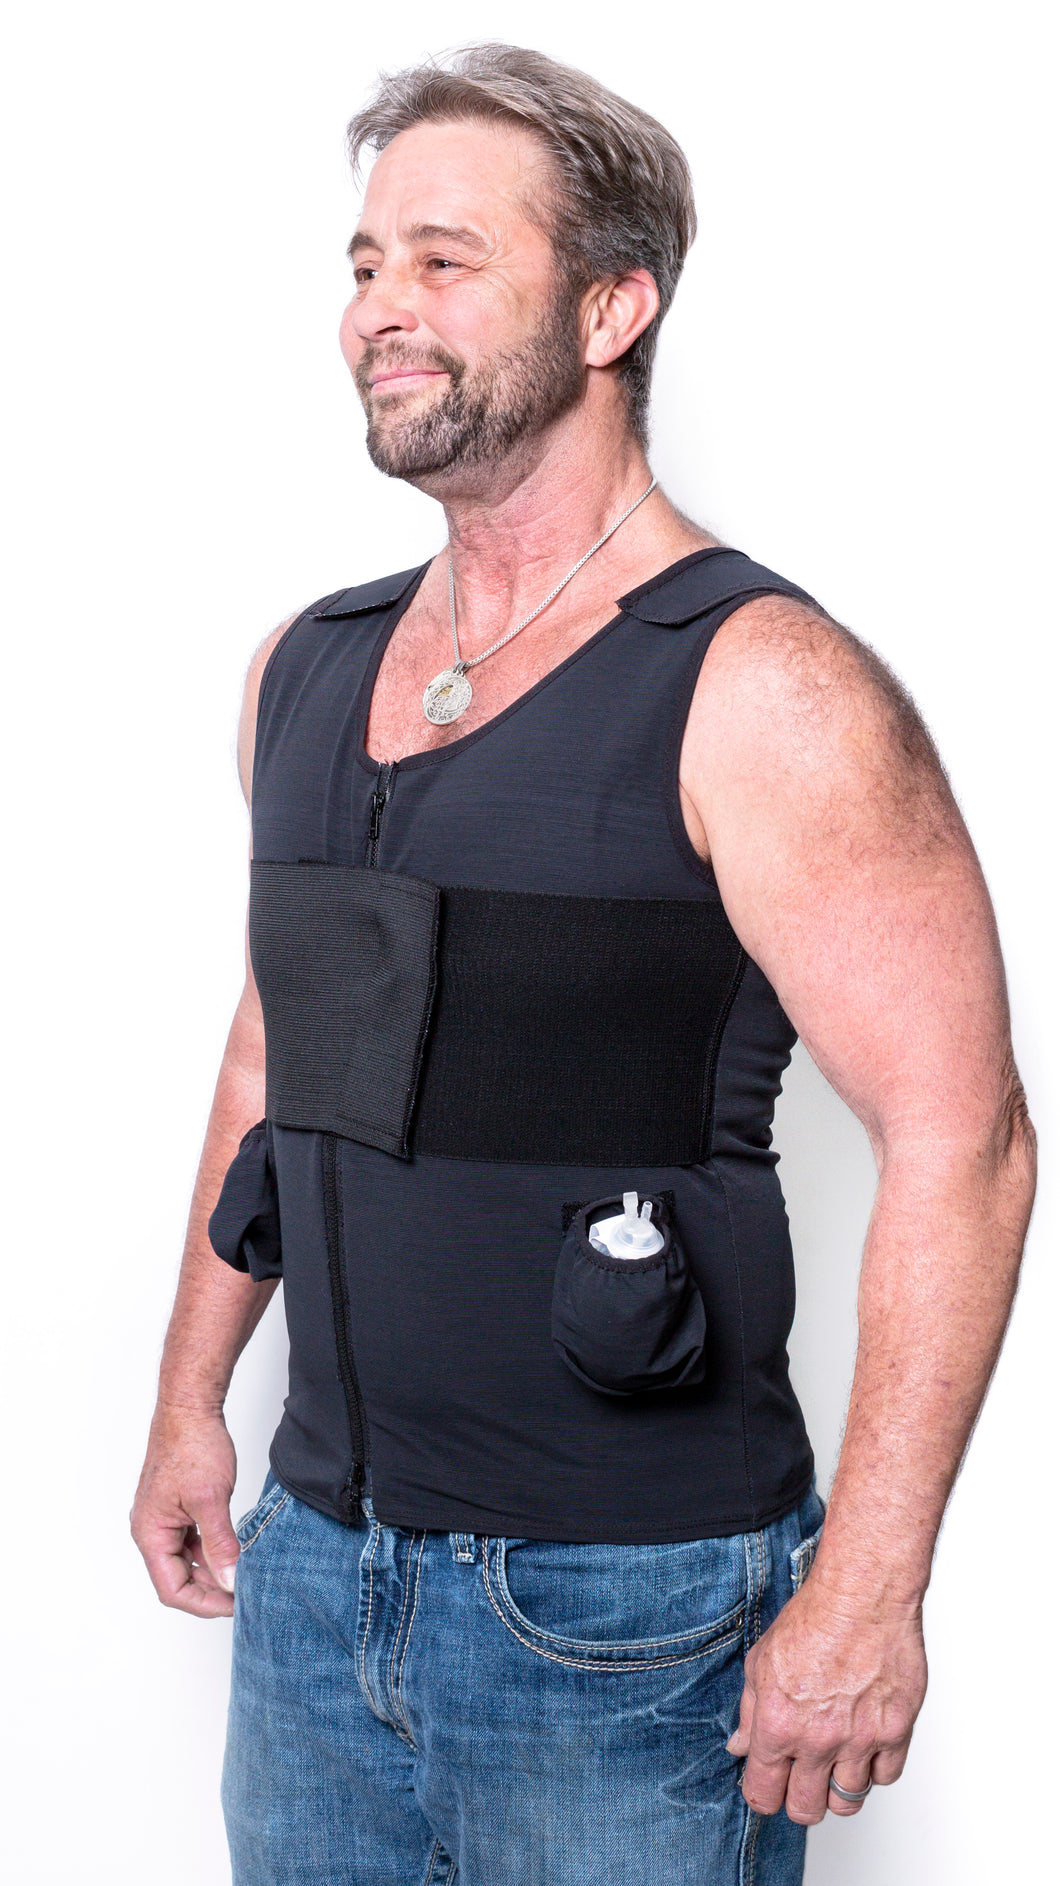 Post Surgical Compression Vest For Men - Post Op Top